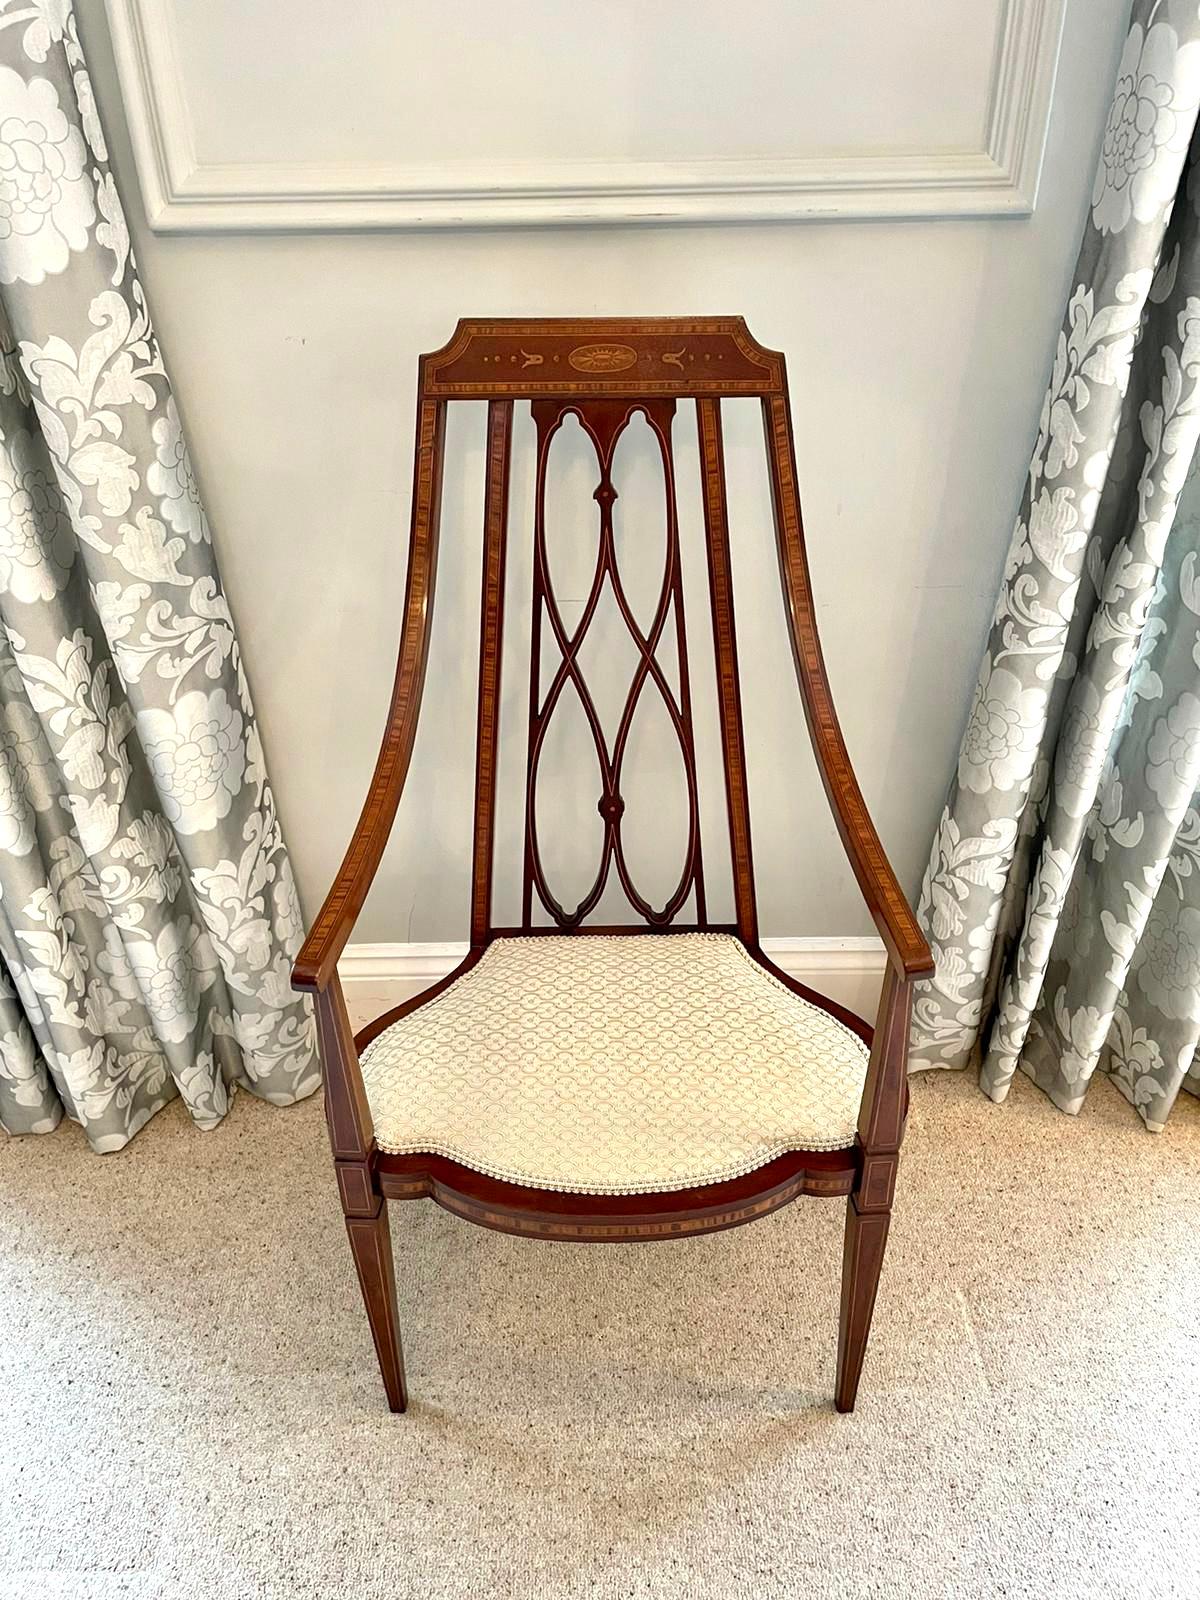 Inhabituel fauteuil en acajou marqueté du 19e siècle, de style victorien, présentant une rampe supérieure de forme attrayante avec incrustation de bois de satin et de jolis bras ouverts de forme inhabituelle avec incrustation de bois de satin. Le